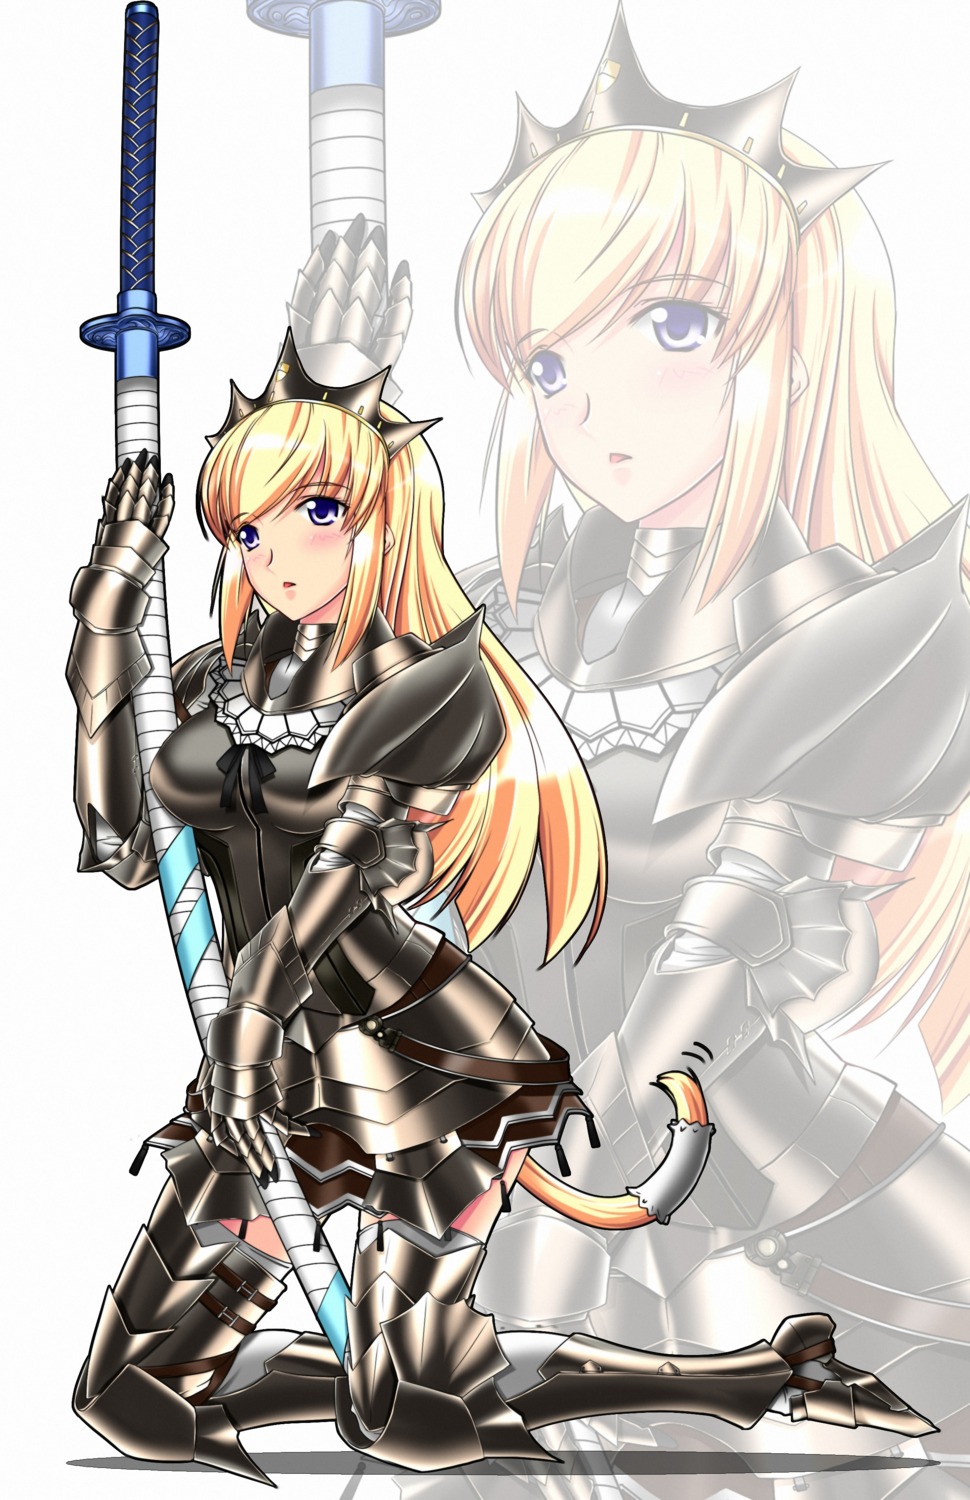 armor merufena monster_hunter sword tail